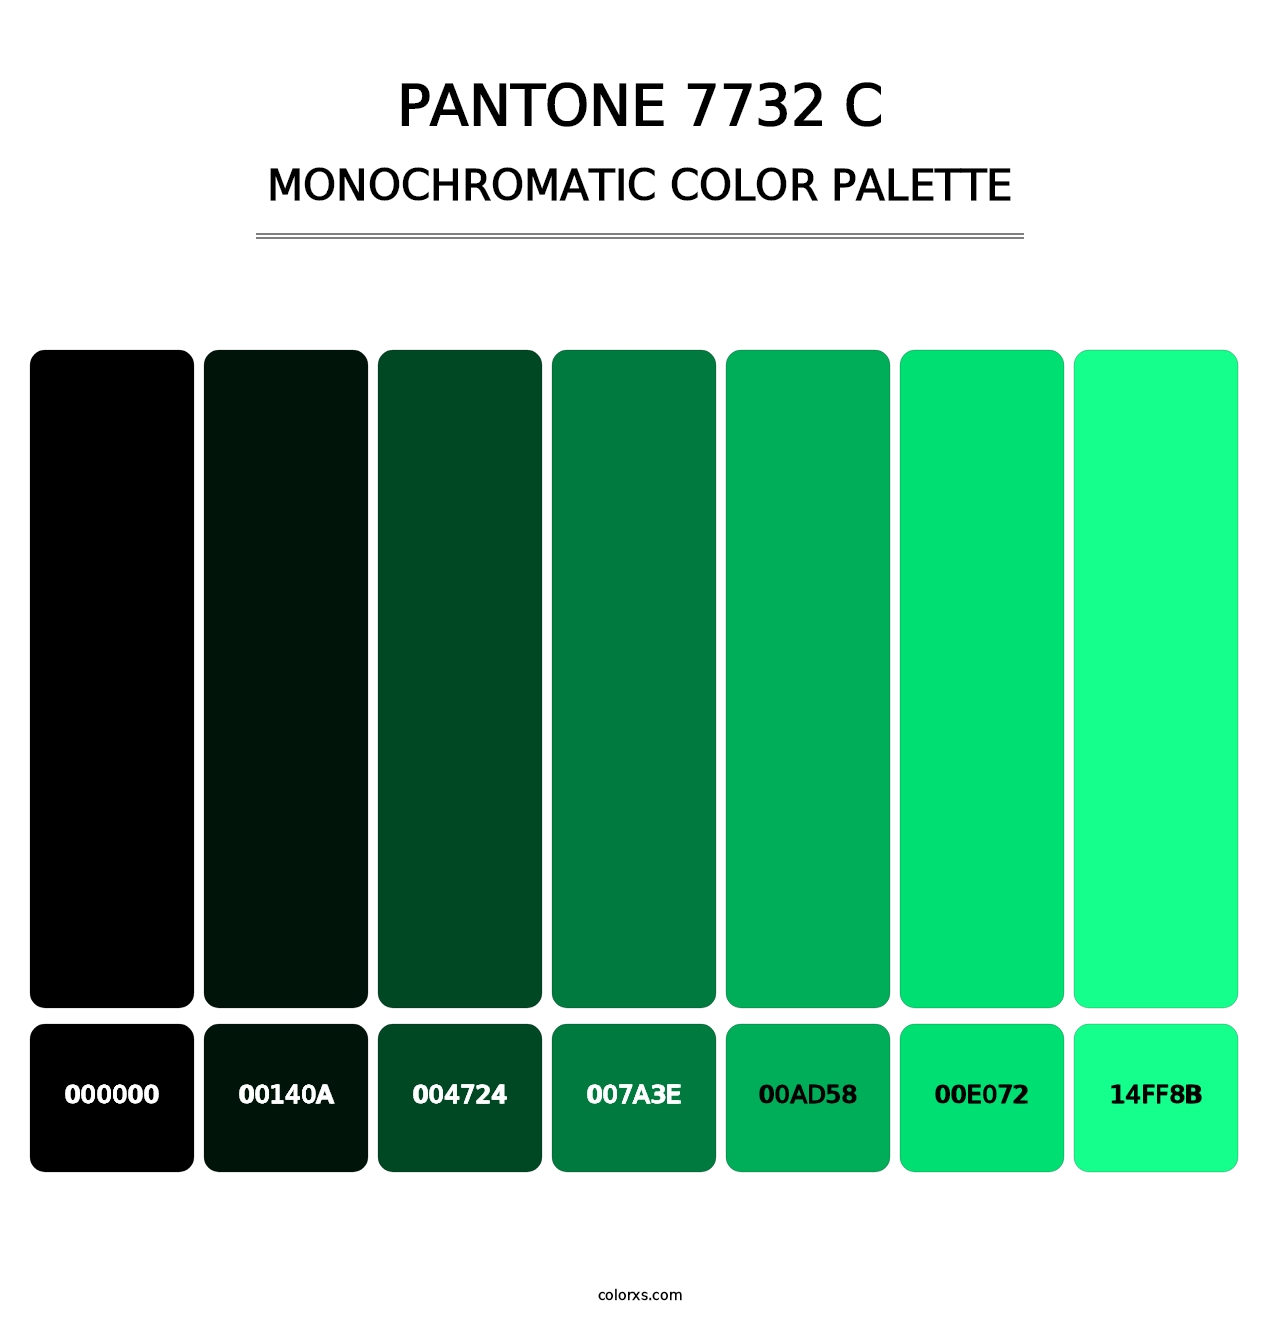 PANTONE 7732 C - Monochromatic Color Palette